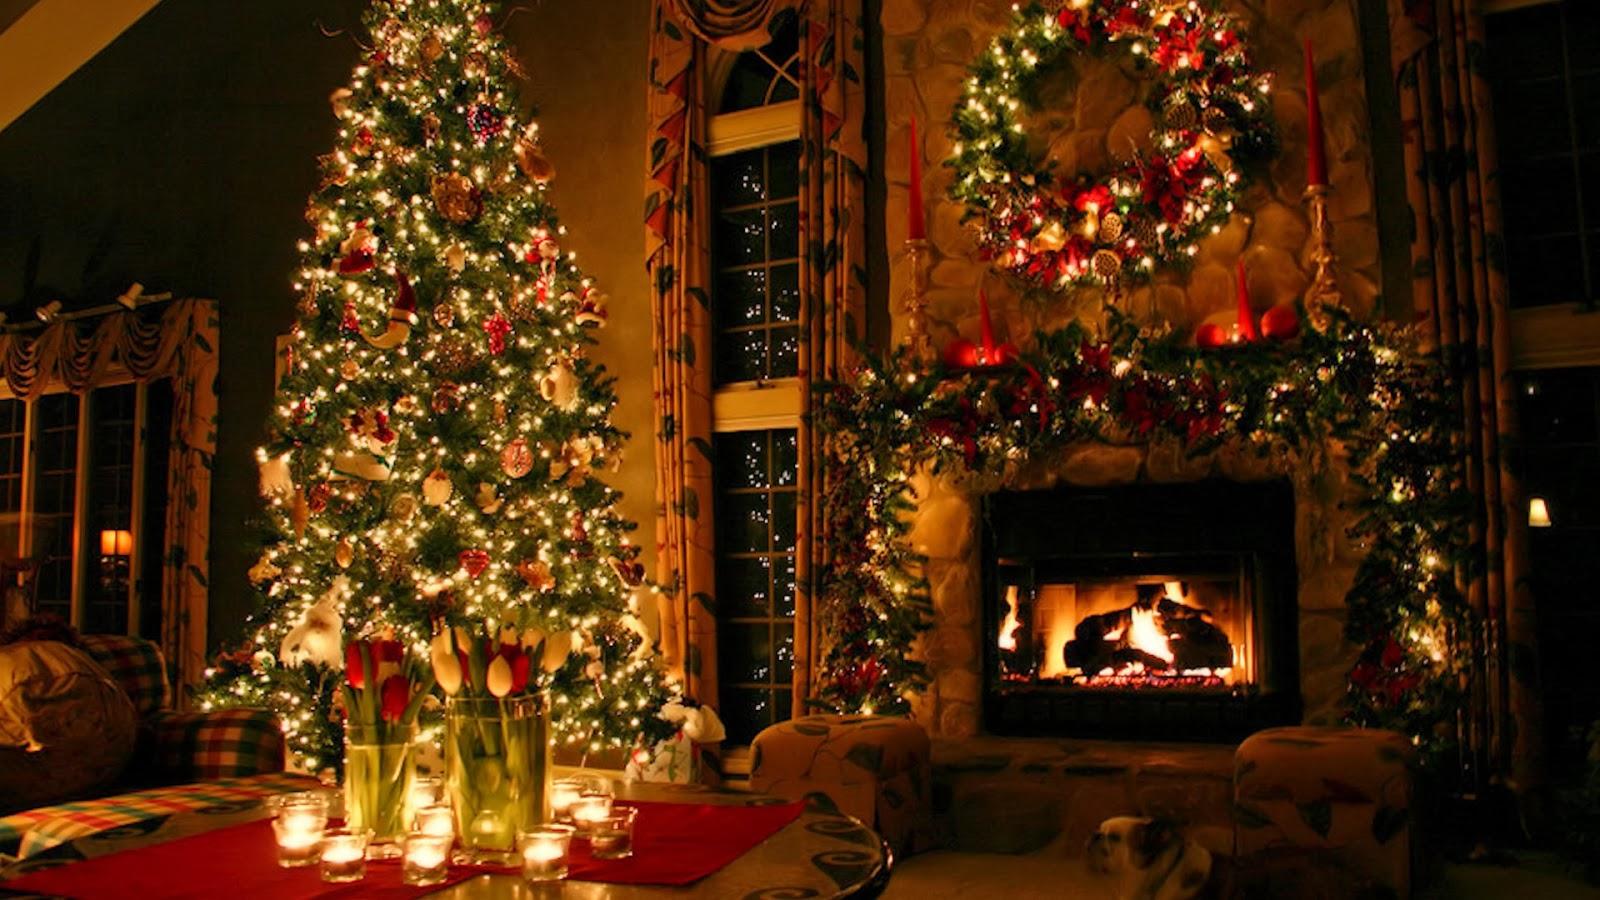 Khẳng định không khí Giáng sinh trong nhà với phông nền đầy hứng khởi và ấm cúng. Hãy xem hình ảnh liên quan để cảm nhận được sự tinh tế và lãng mạn của phông nền này trong những ngày đặc biệt năm nay.